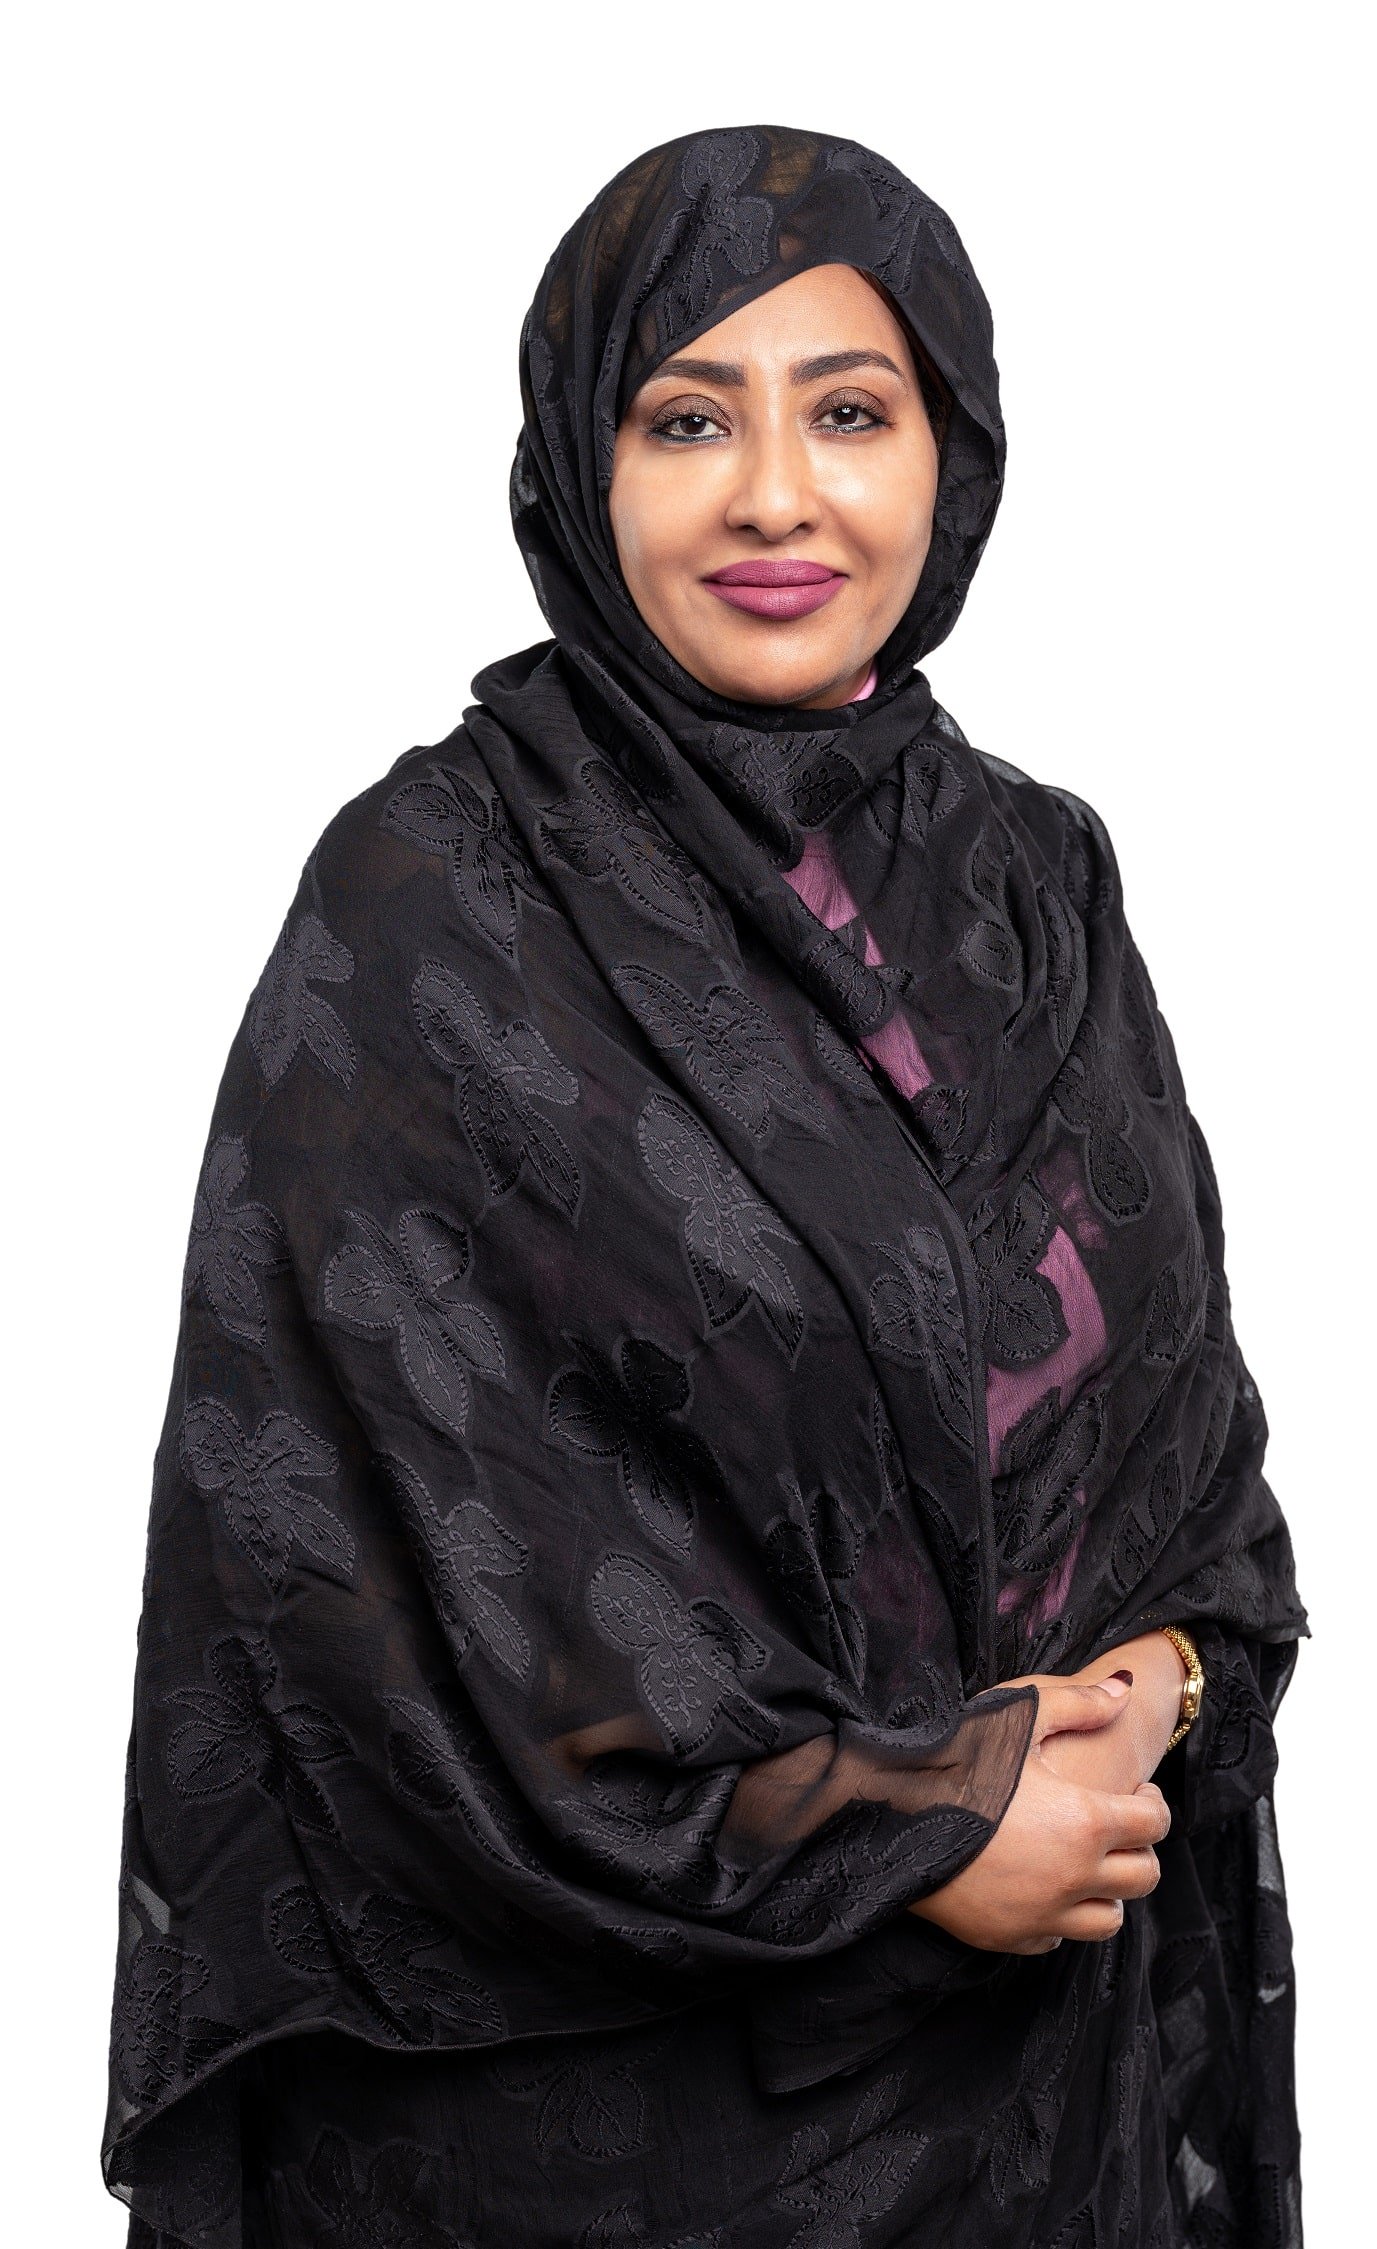 Dr. Afraa Awaad  ElKarim